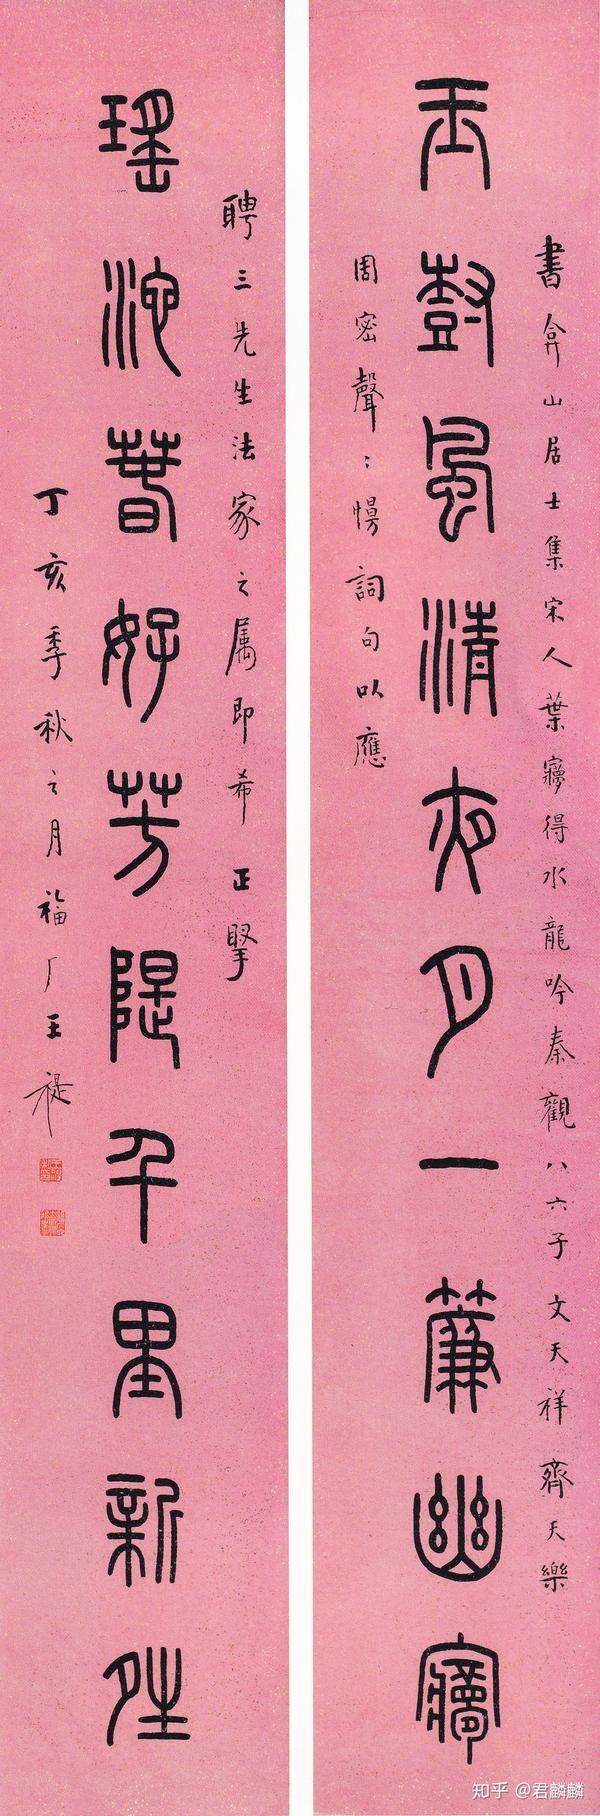 1947年 王福庵 "玉树瑶池"篆书十言对联